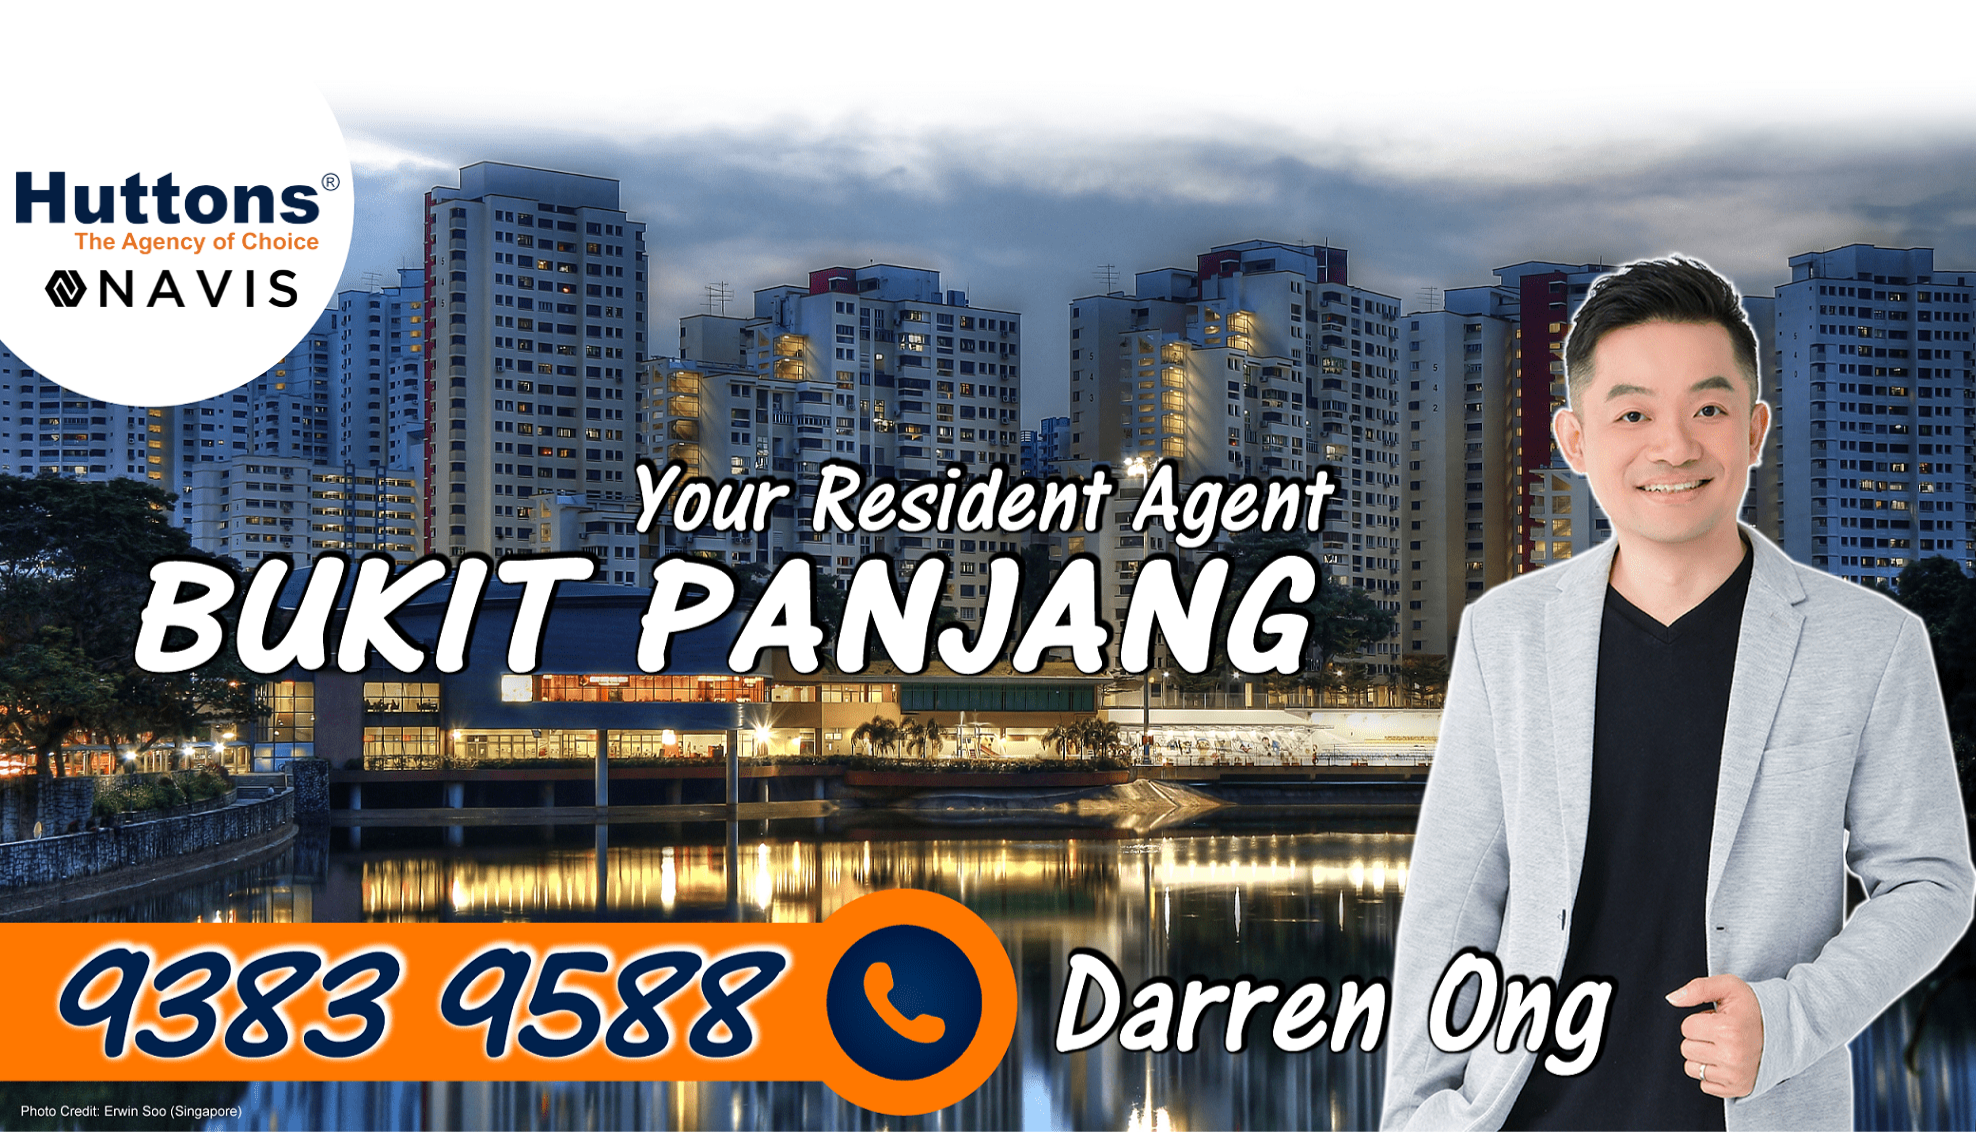 Experienced Bukit Panjang Resident Agent - Darren Ong 93839588